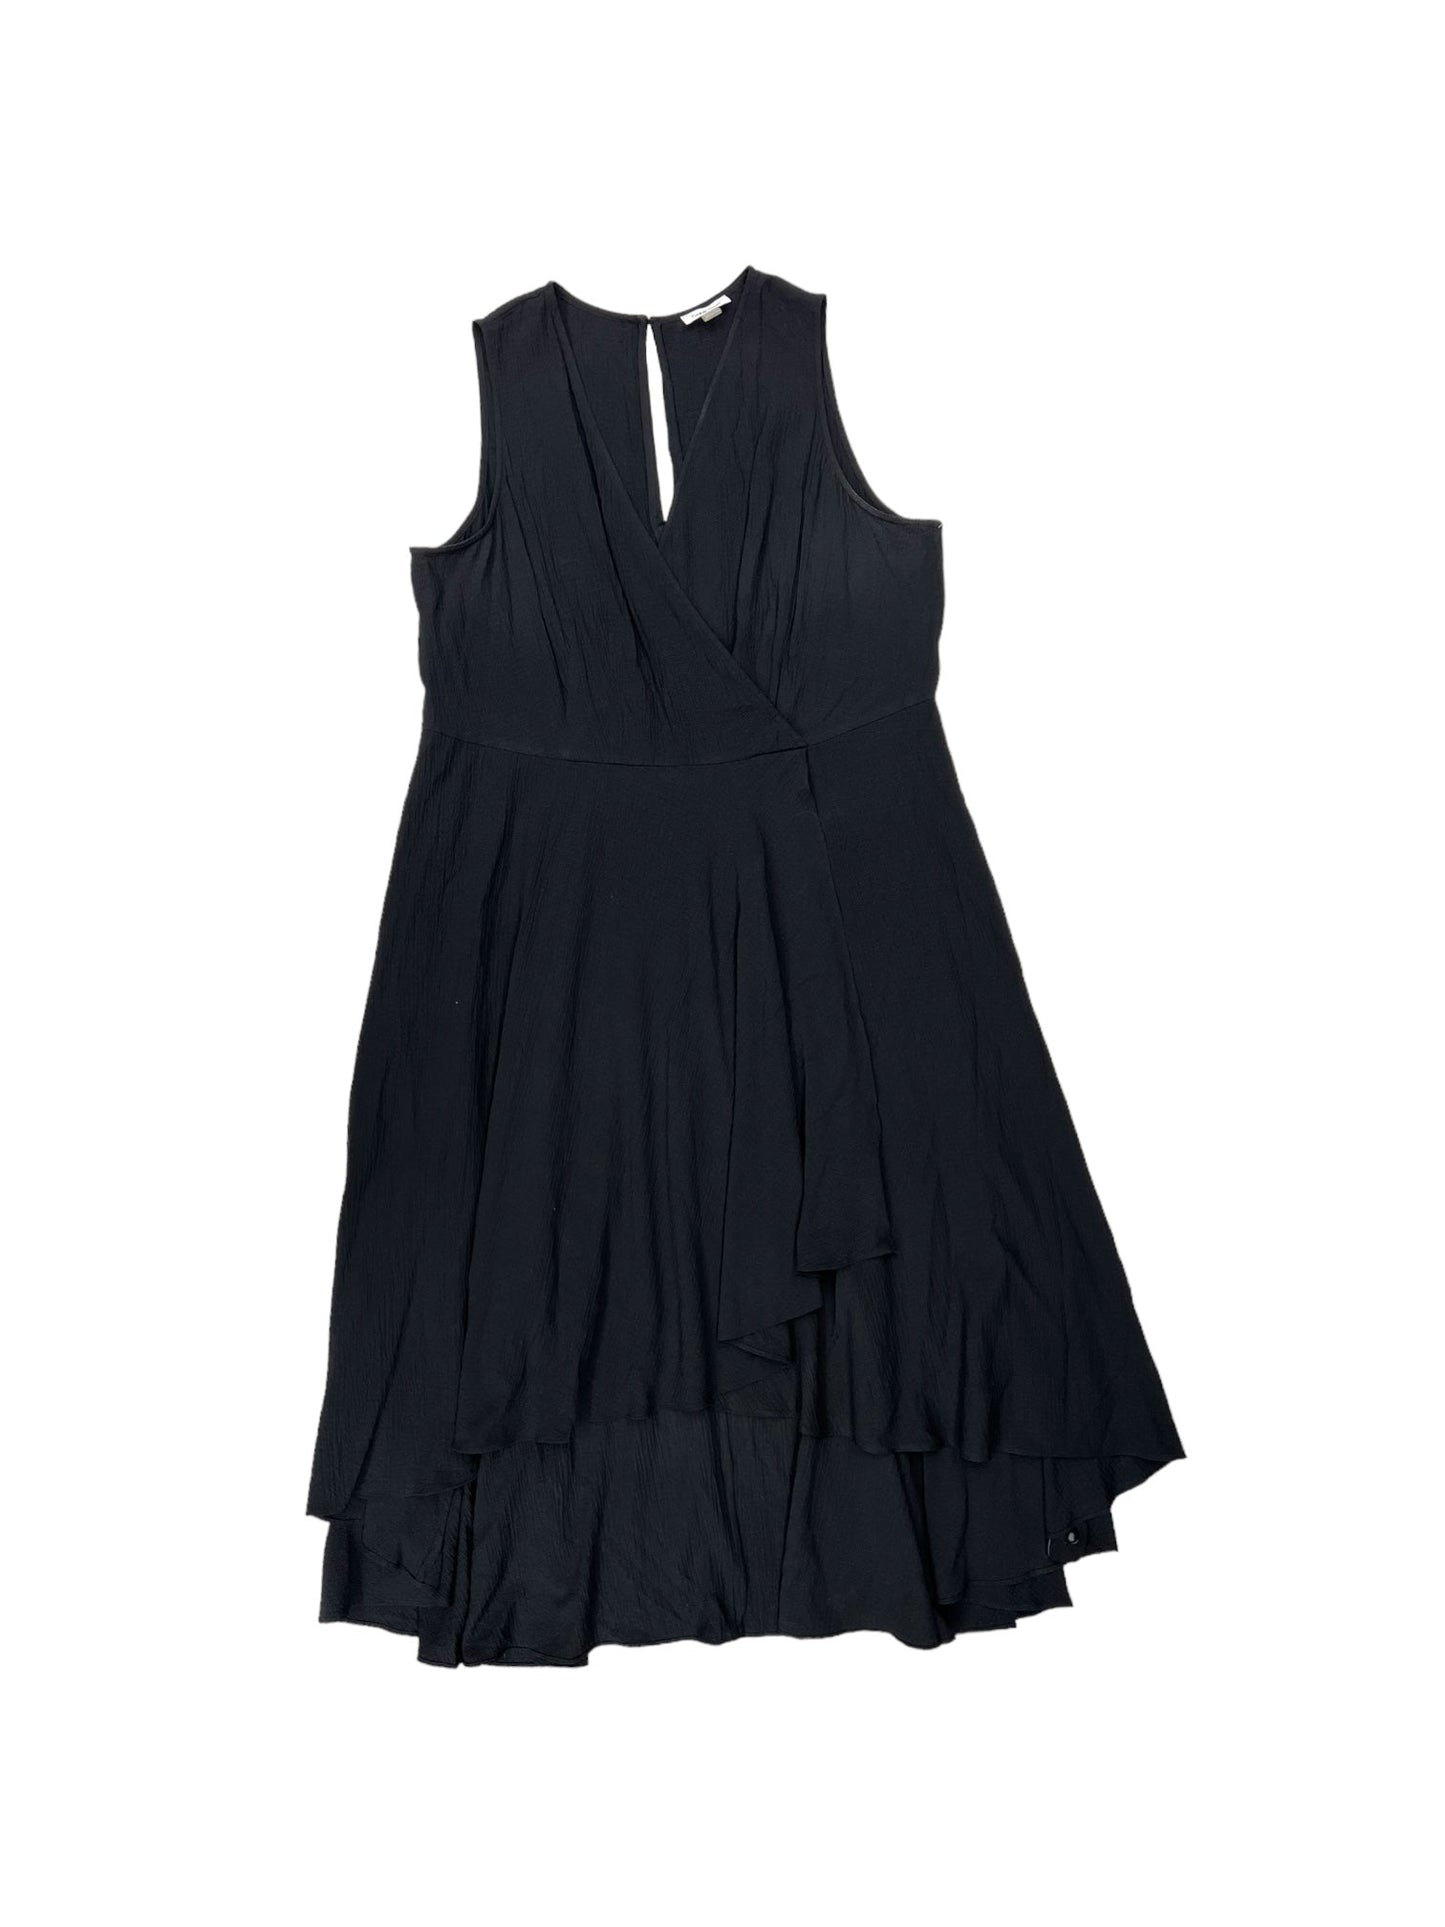 Black Dress Casual Maxi Calvin Klein, Size 16